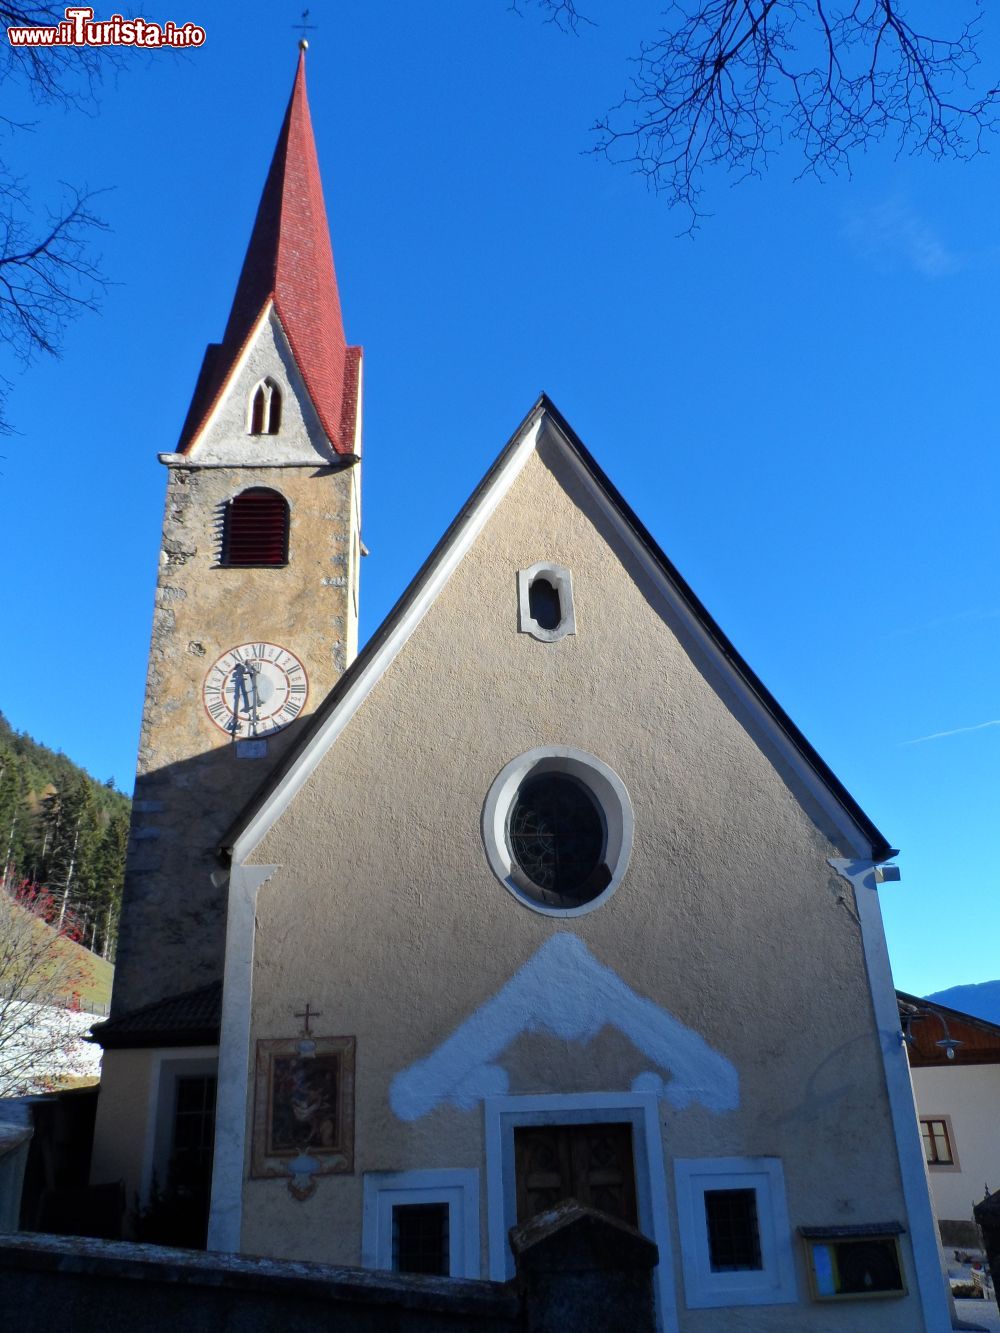 Immagine Varna la Parrocchiale di St. Wolfang in Alto Adige - © Leitzsche, CC0, Wikipedia